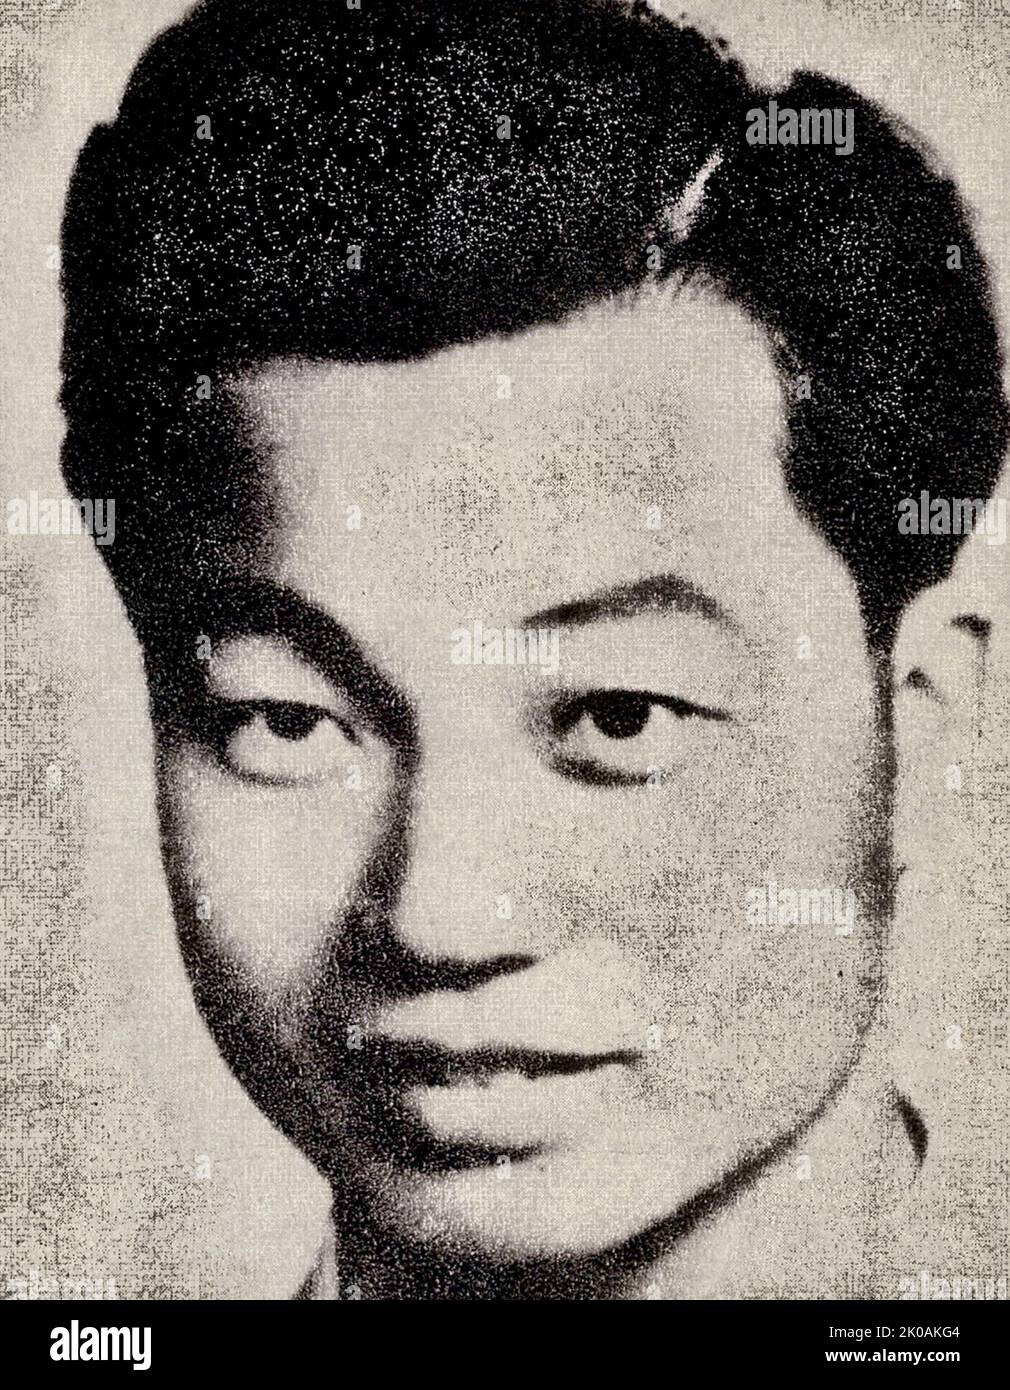 Qian Wenxiang (1924-1949), membro del Partito Comunista Cinese, della Contea di Sheng nella Provincia di Zhejiang. Era una polizia del Dipartimento di polizia di Shanghai e attivamente impegnato in lotte segrete. È stato arrestato il 13th maggio 1949 e ha subito torture, ma ha protetto il suo partito e i suoi colleghi. Fu ucciso con i suoi colleghi Qian Fengqi, Liu Jiadong e Jiang Zhiyi, e fu chiamato collettivamente "i quattro martiri della polizia". Foto Stock